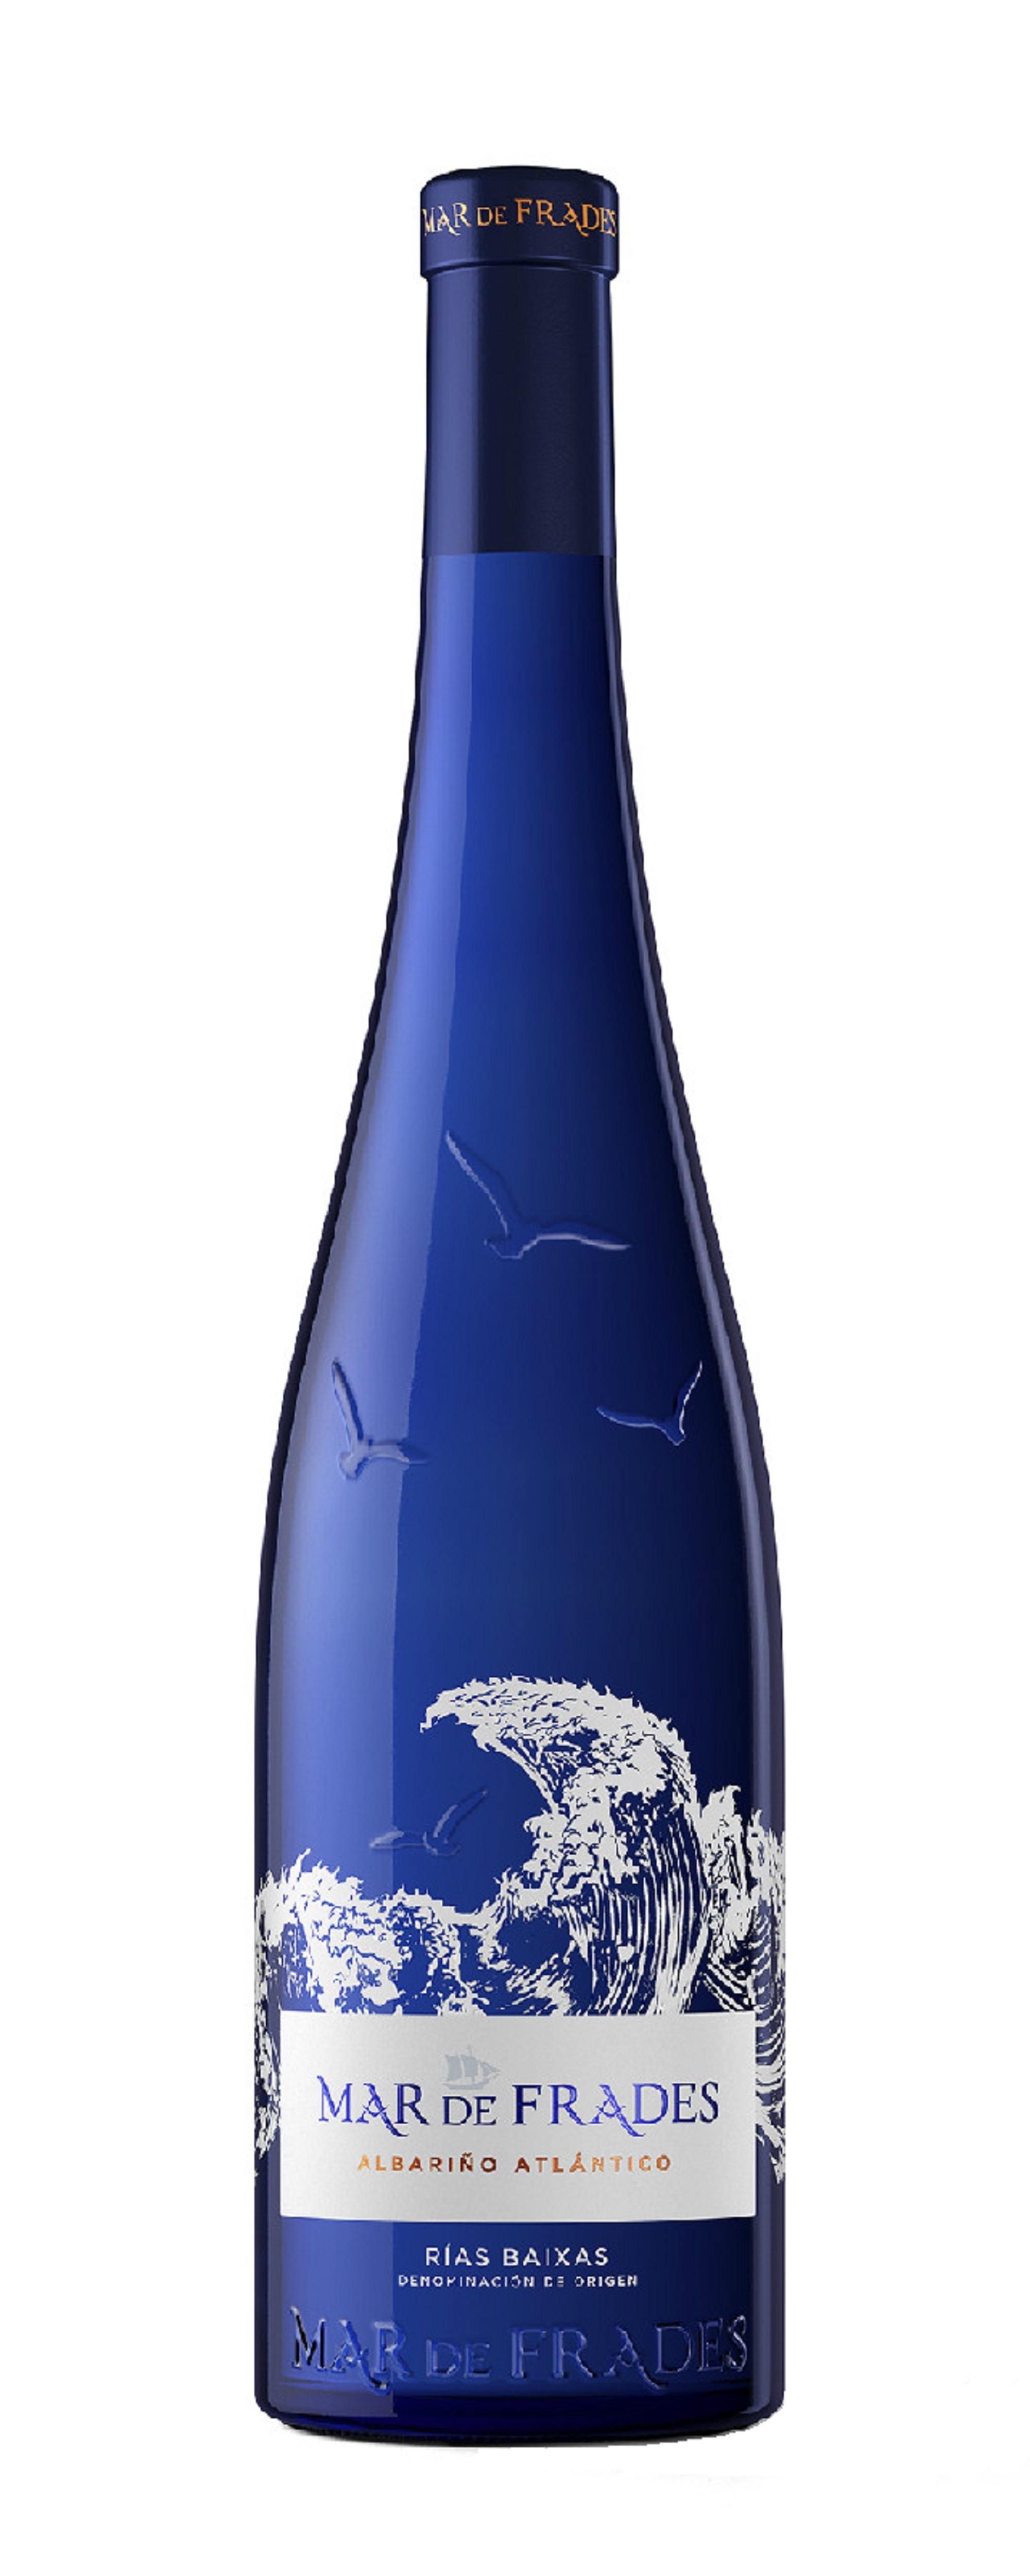 Де маре вино. Альбариньо Риас Байшас. Вино Pazo Cilleiro Albarino Rias Baixas do 2016 0.75 л. Альбариньо вино Испания. Вино с корабликом Mar de Frades.